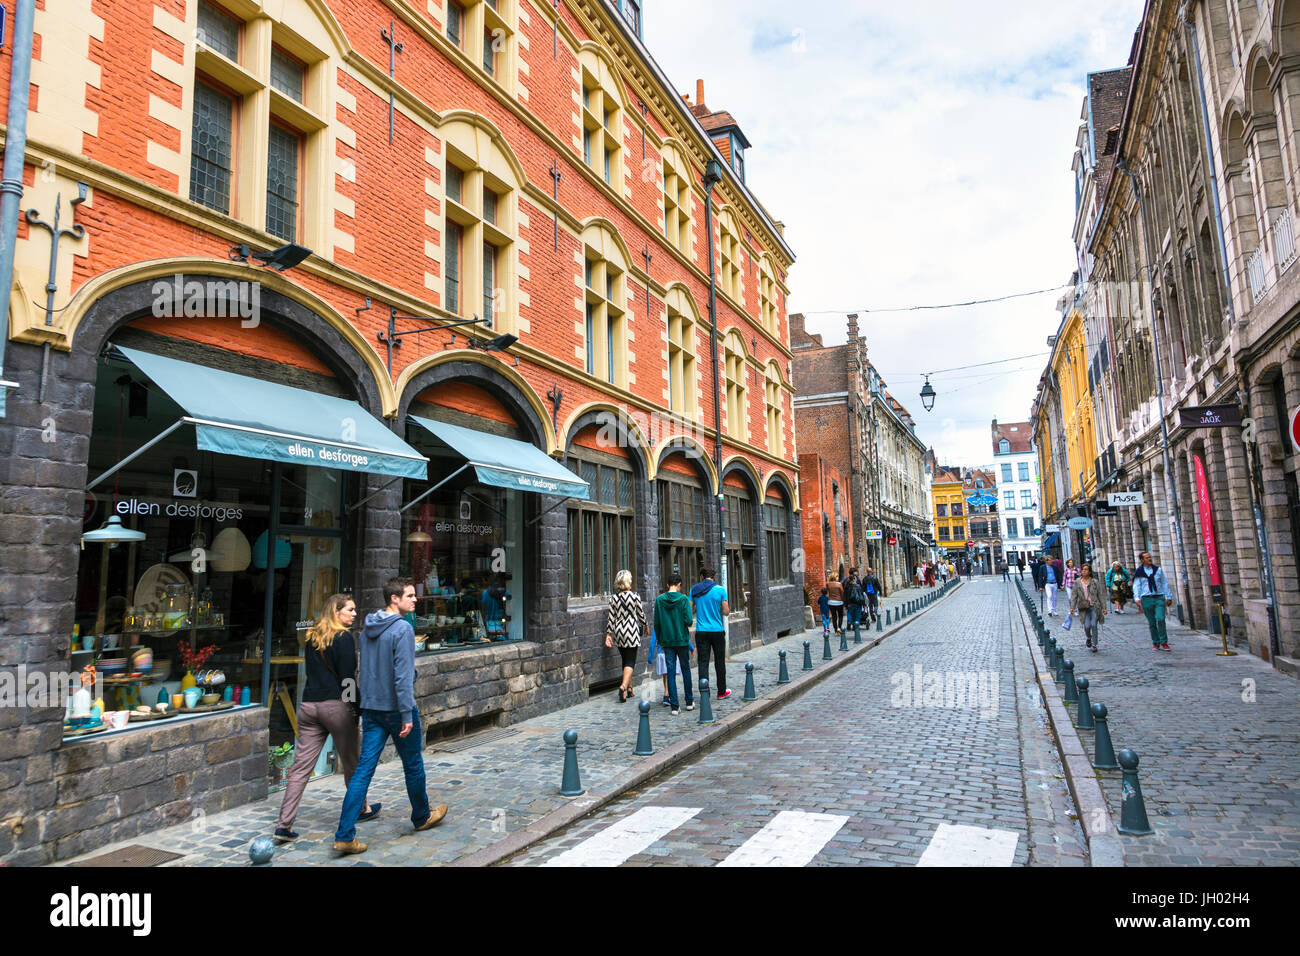 People walking on a cobbled street (Rue de la Monnaie) in Lille, France Stock Photo